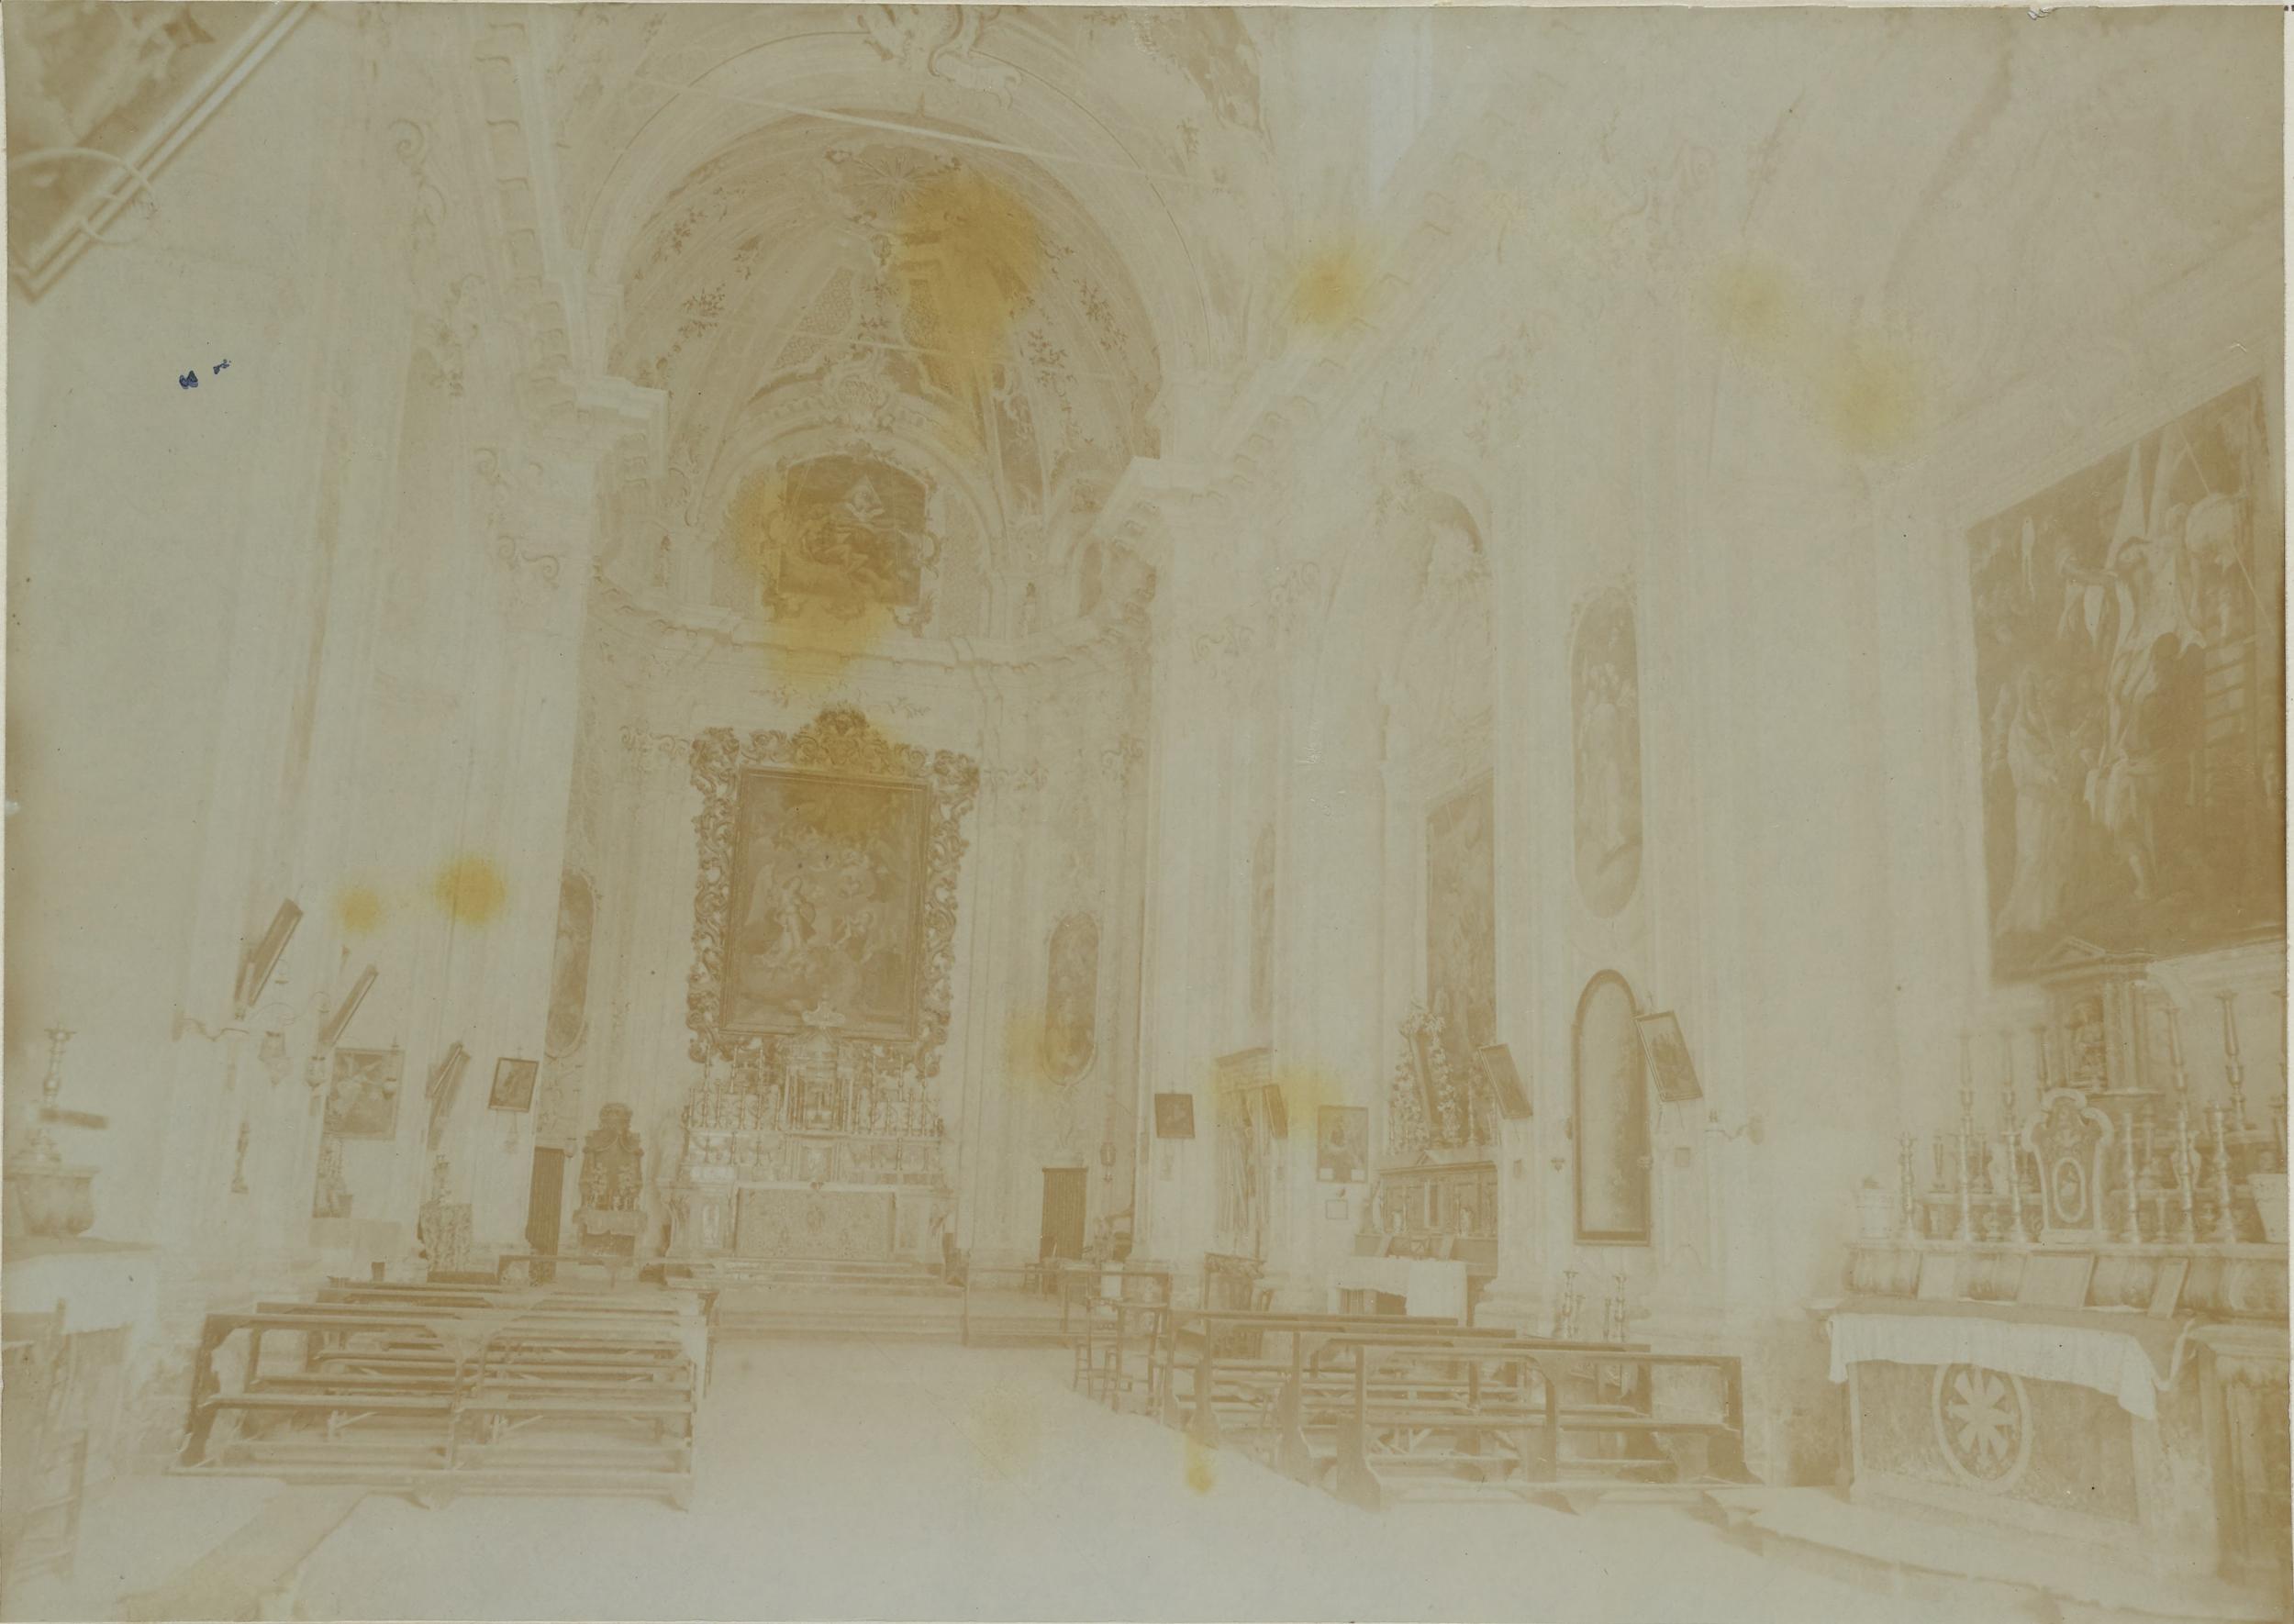 Fotografo non identificato, Avola - Chiesa della SS. Annunziata, interno, 1891-1910, aristotipo, MPI135438A